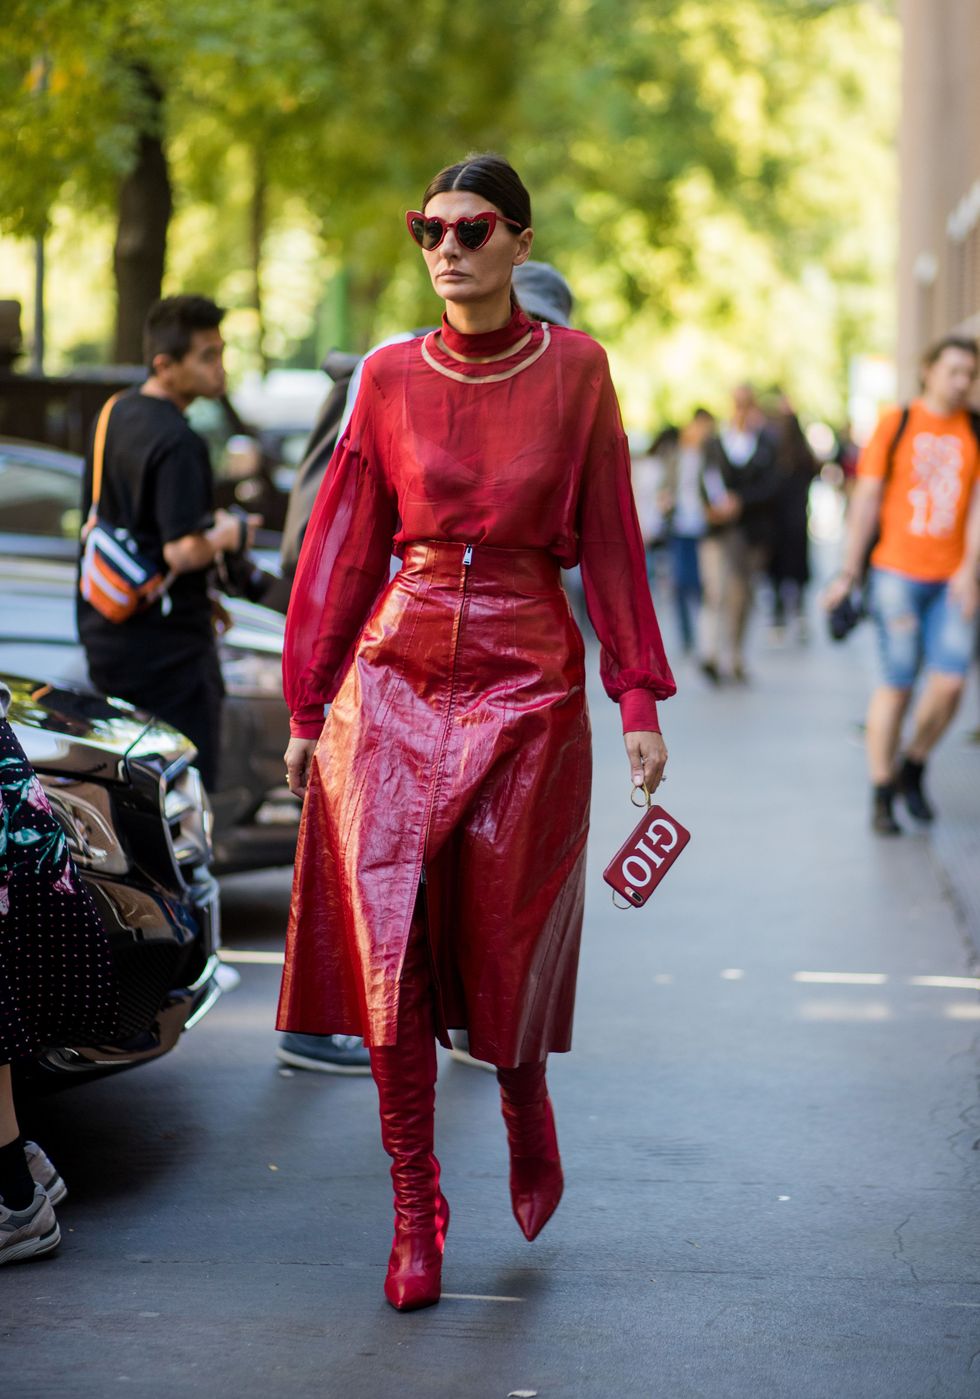 <p>絲質的紅色上衣搭配亮面的紅色皮革裙，利用不同材質的紅色做出造型層次，再搭配今年很流行的紅色長靴，打造帥氣有型的時尚造型。</p>